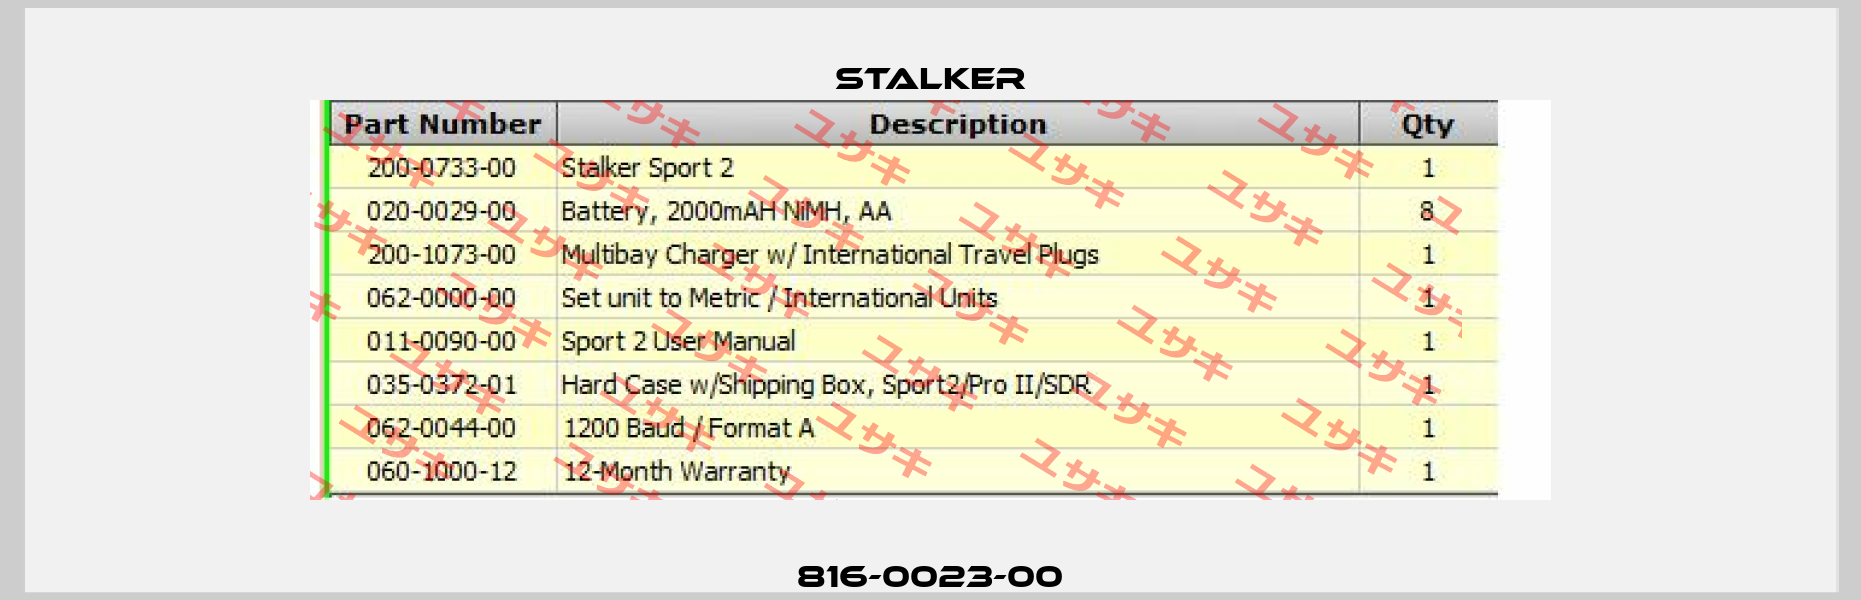 816-0023-00 Stalker